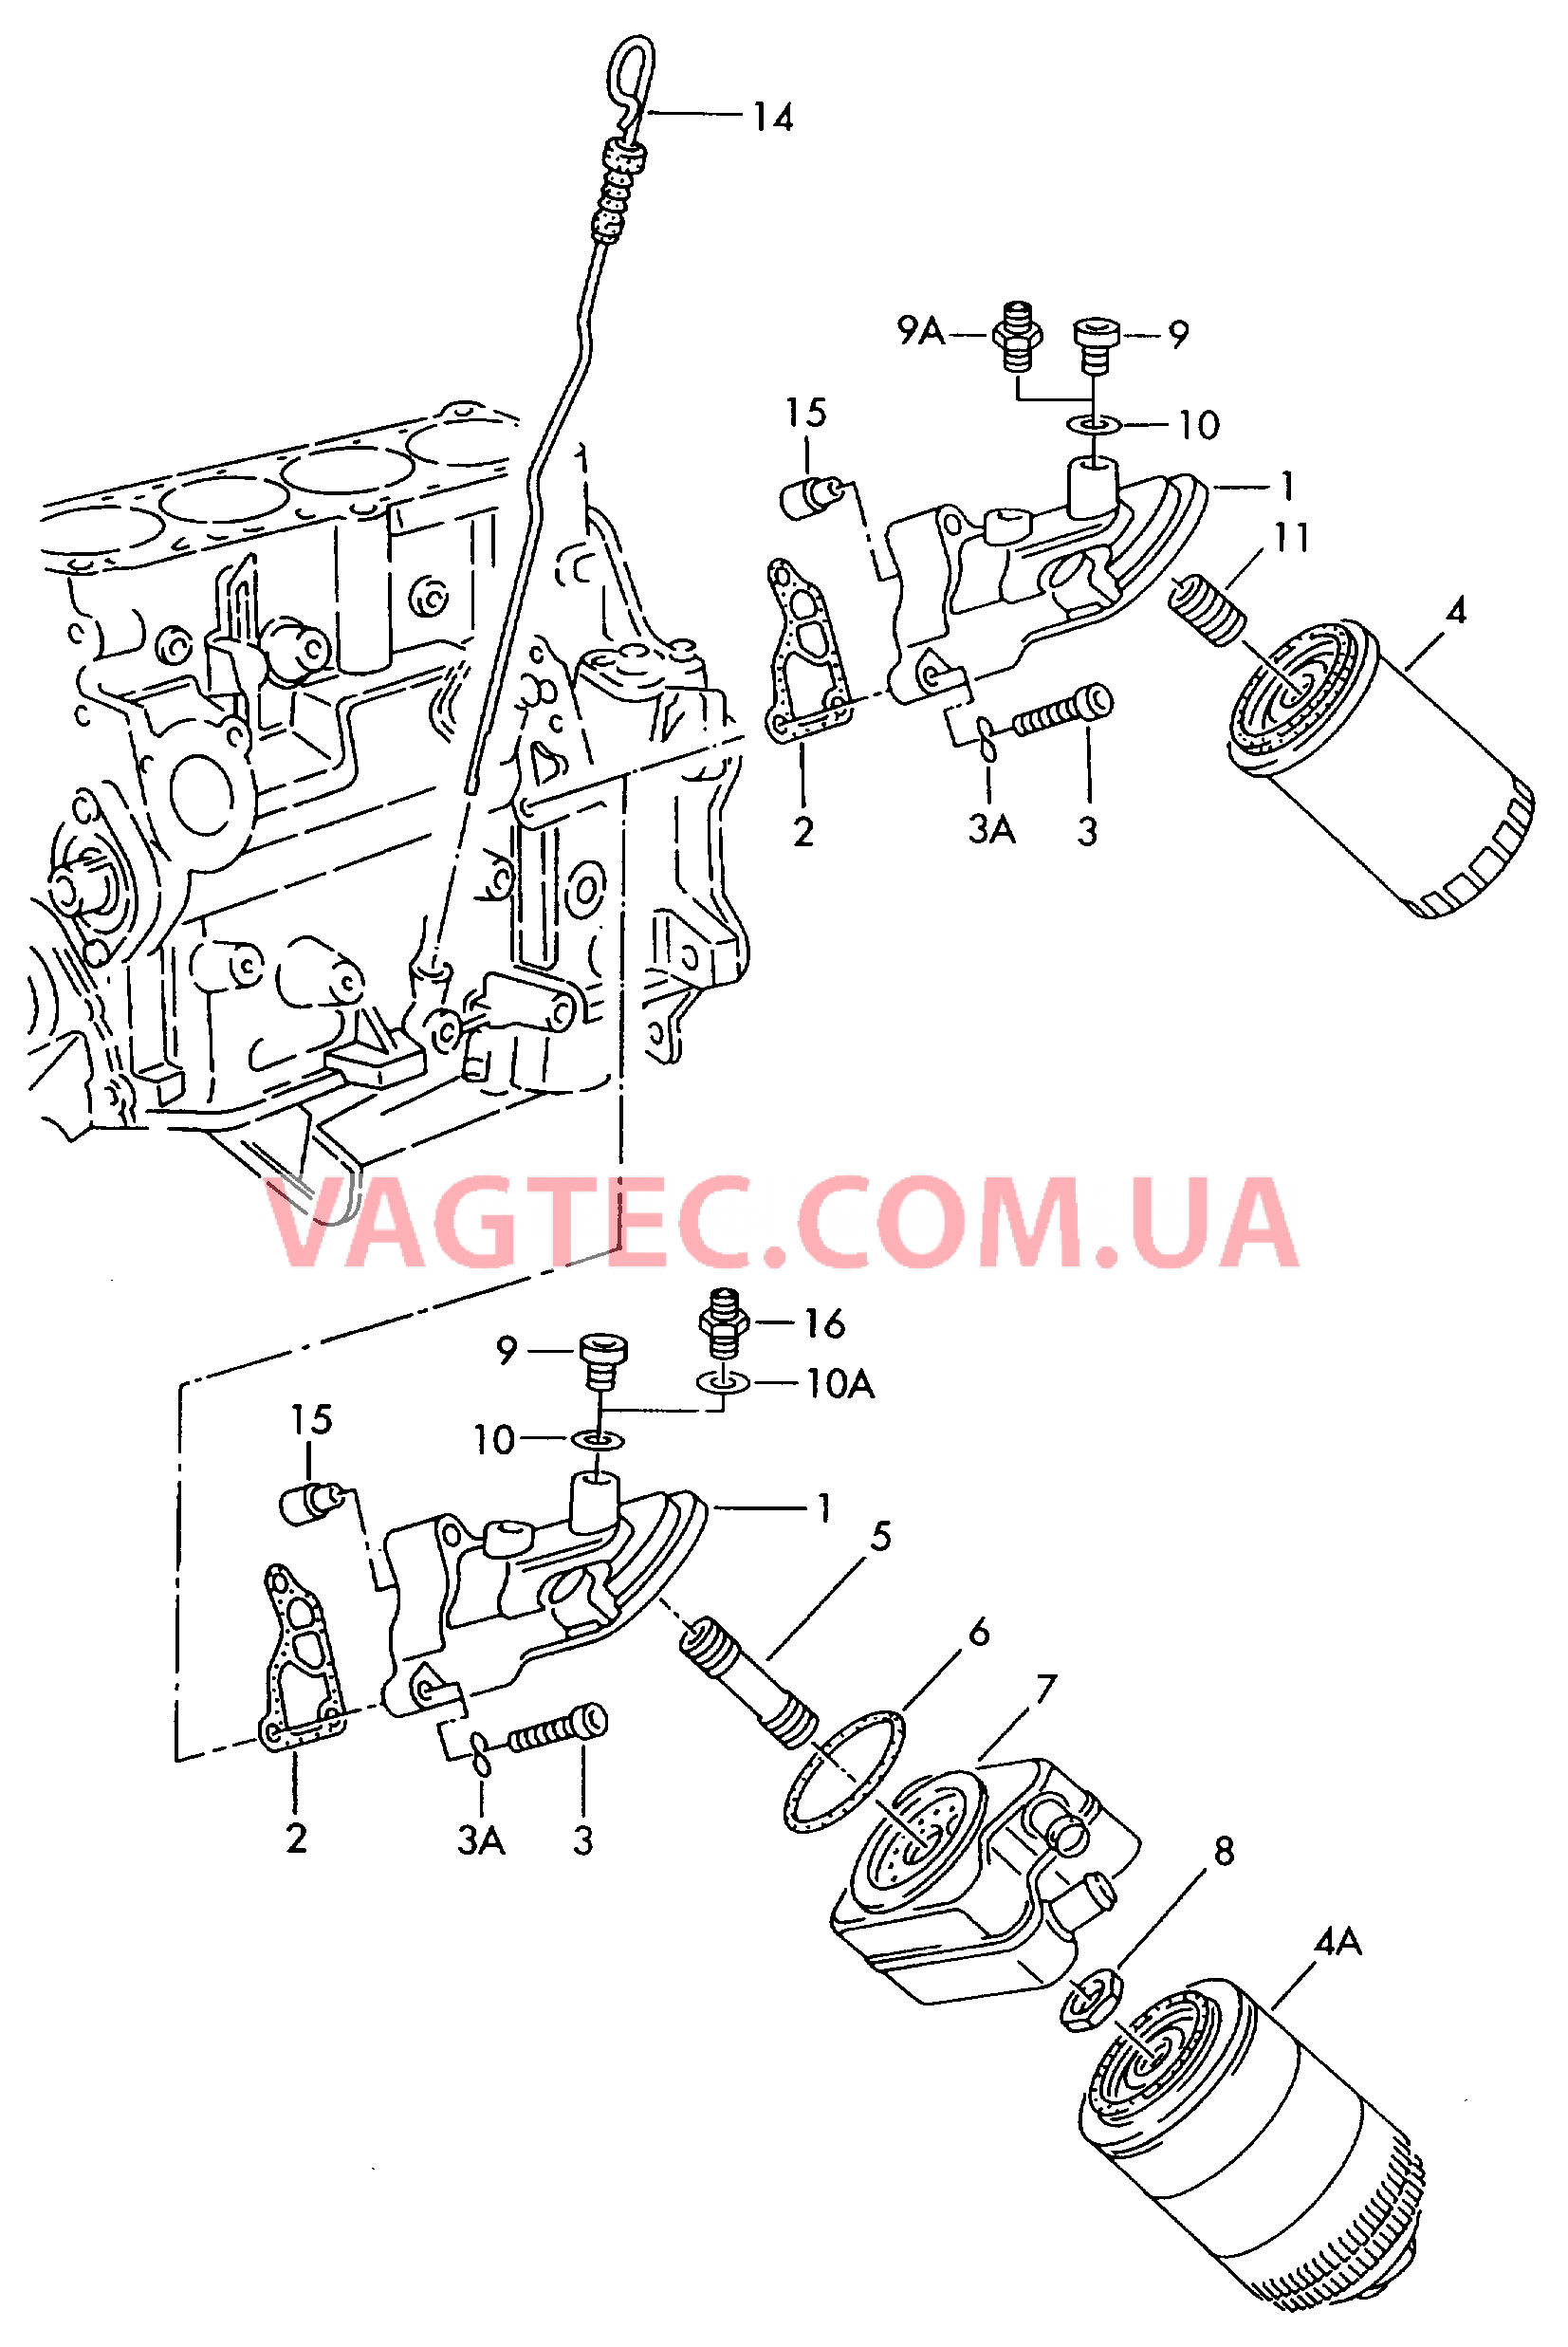 Фильтр, масляный Кронштейн масляного фильтра Маслоизмерительный щуп  для VOLKSWAGEN Passat 2000-1